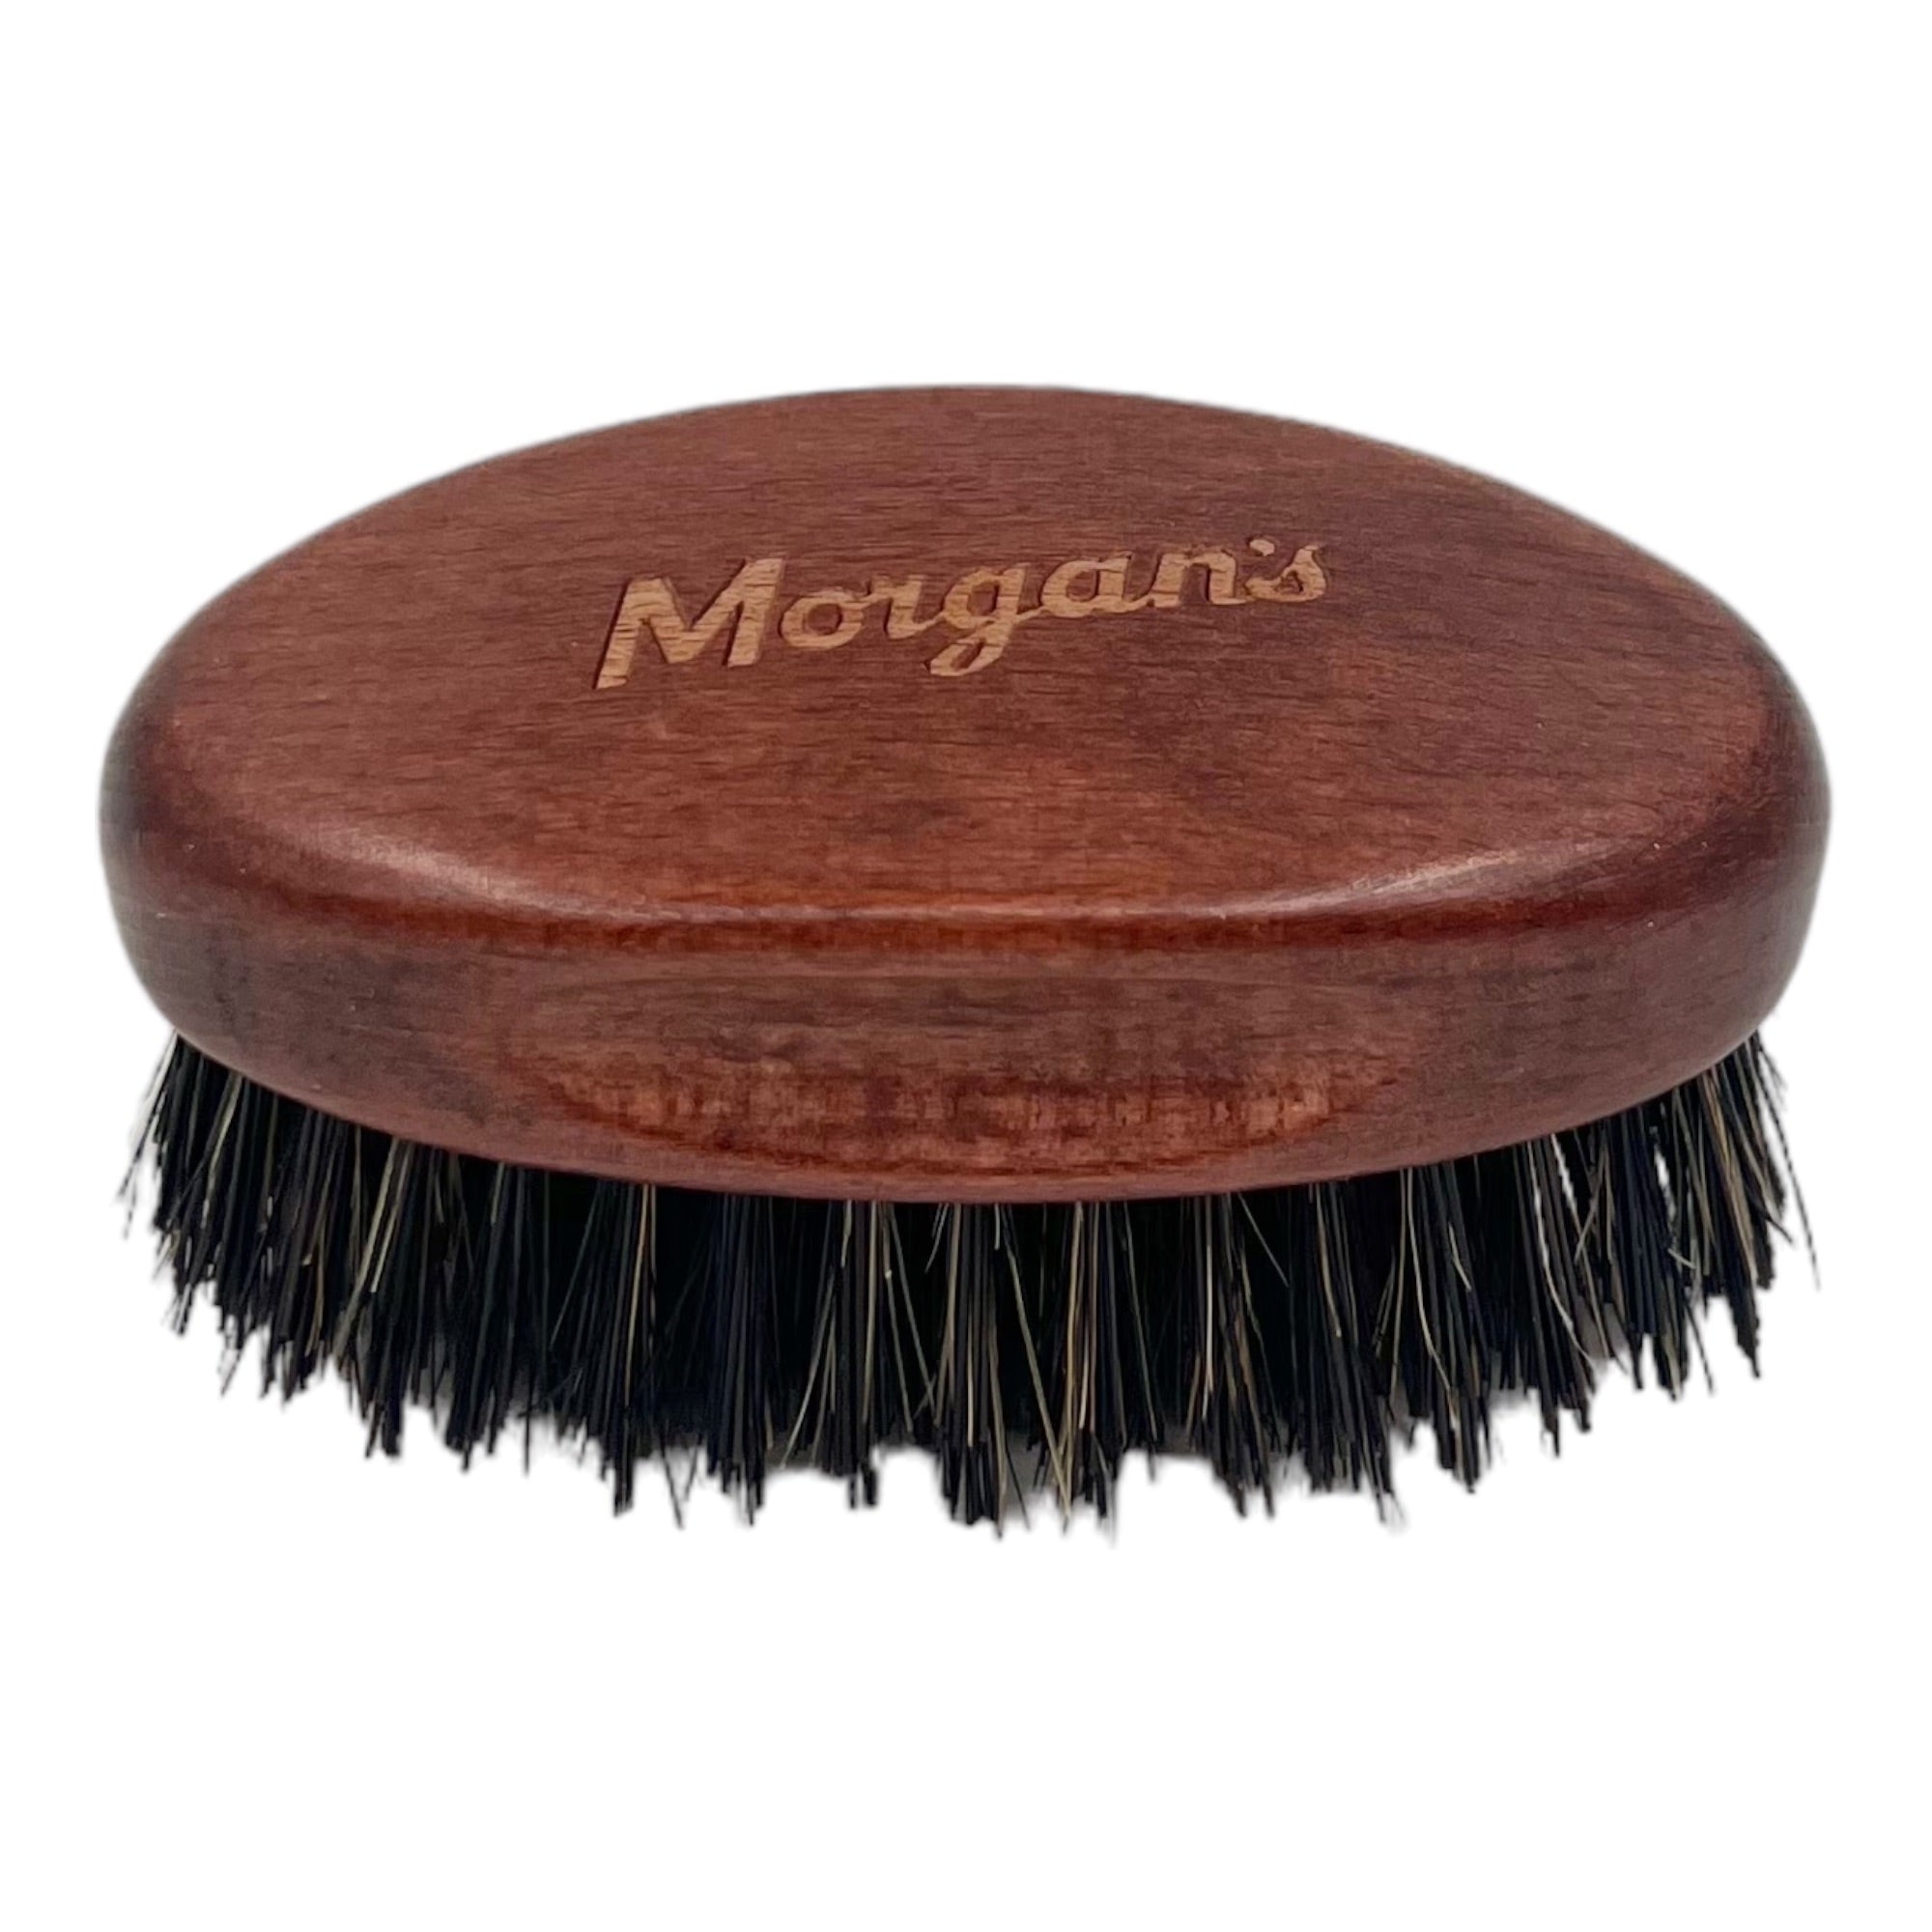 Morgan's - Beard Small Fade Brush